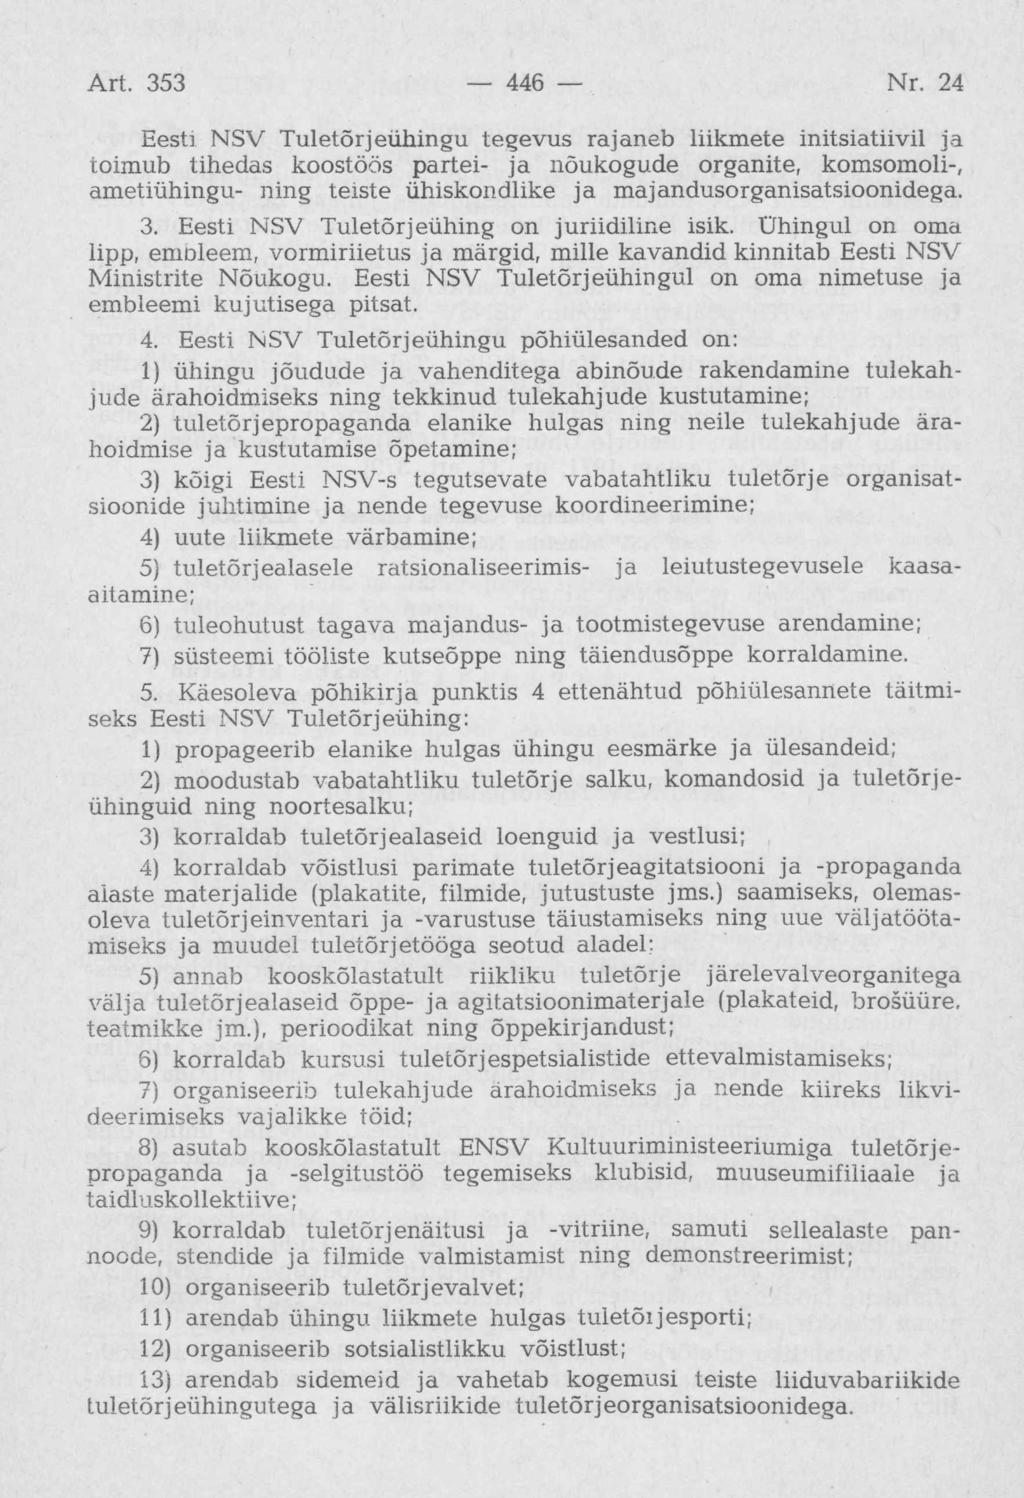 Eesti NSV Tuletõrjeühingu tegevus rajaneb liikmete initsiatiivil ja toimub tihedas koostöös partei- ja nõukogude organite, komsomoli-, ametiühingu- ning teiste ühiskondlike ja